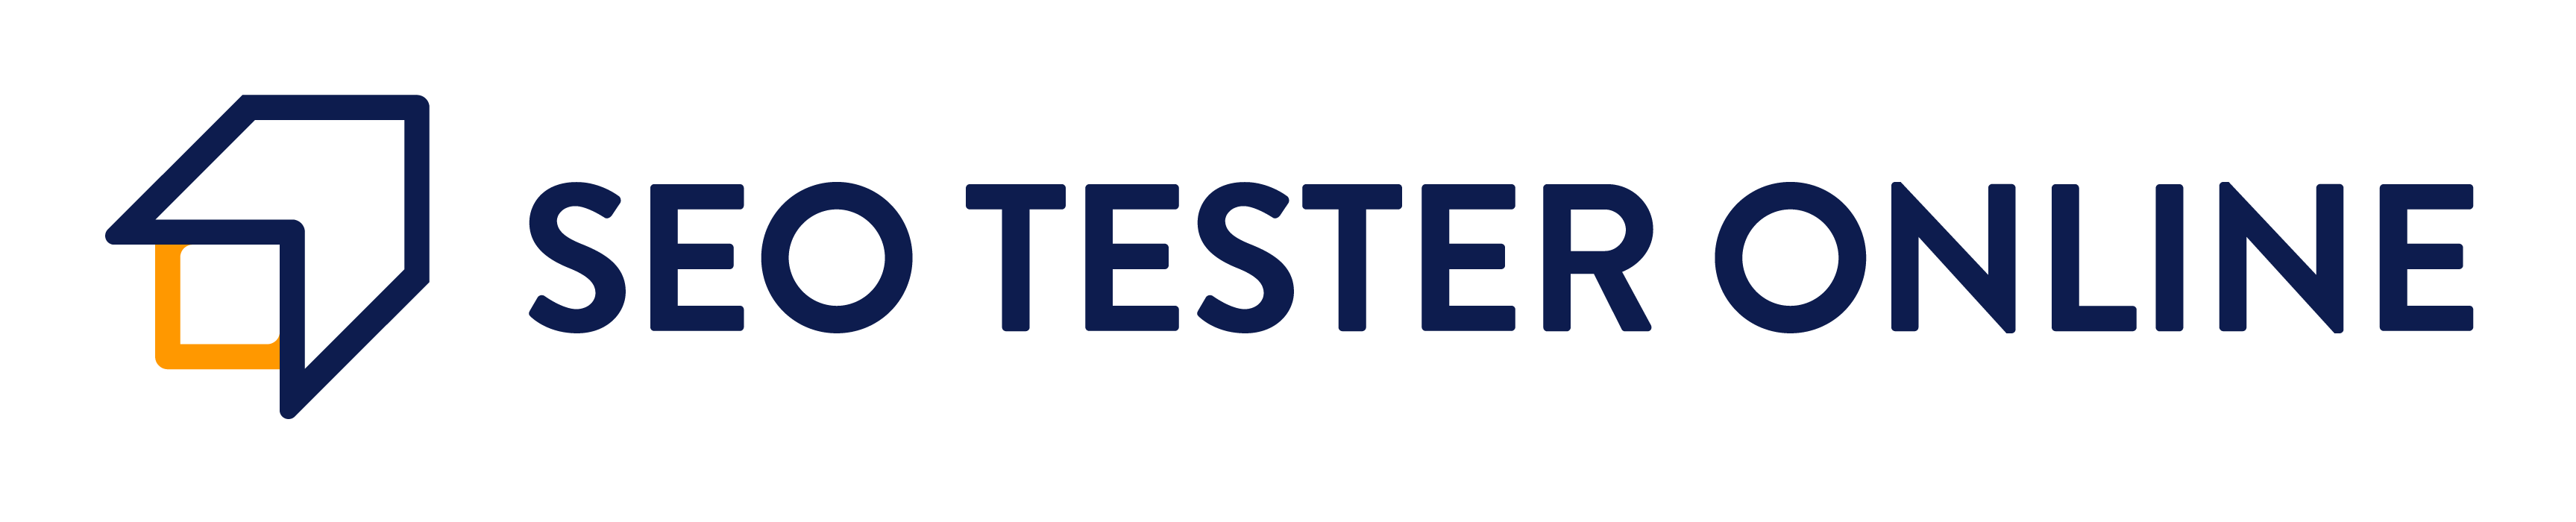 SEO Tester Online